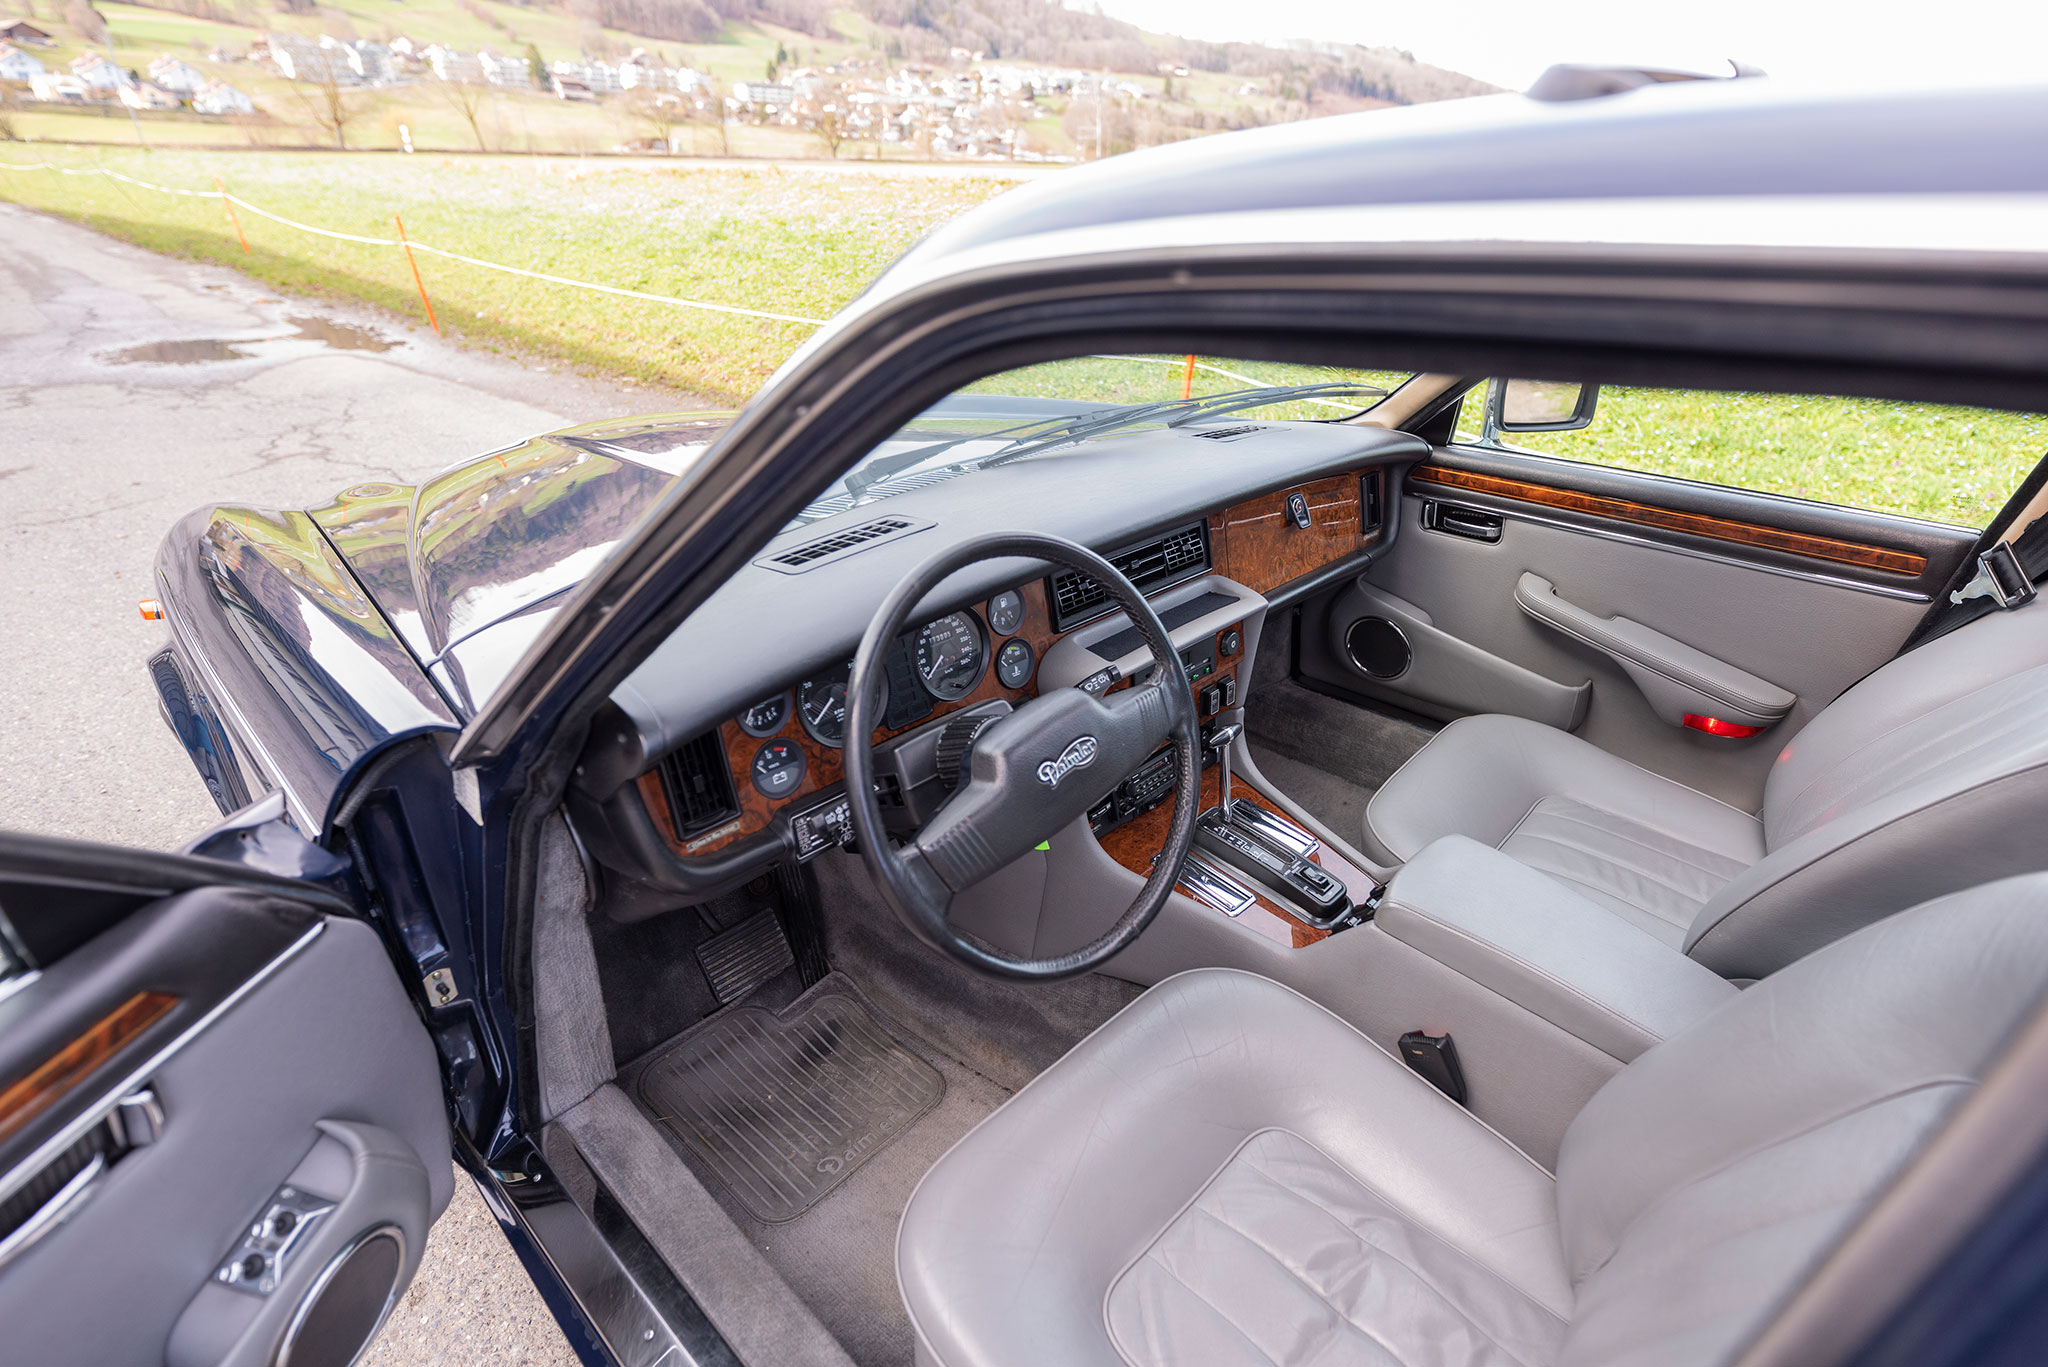 1987 Daimler Double Six – cuir Connolly à profusion et moquette épaisse le tout en très bel état.